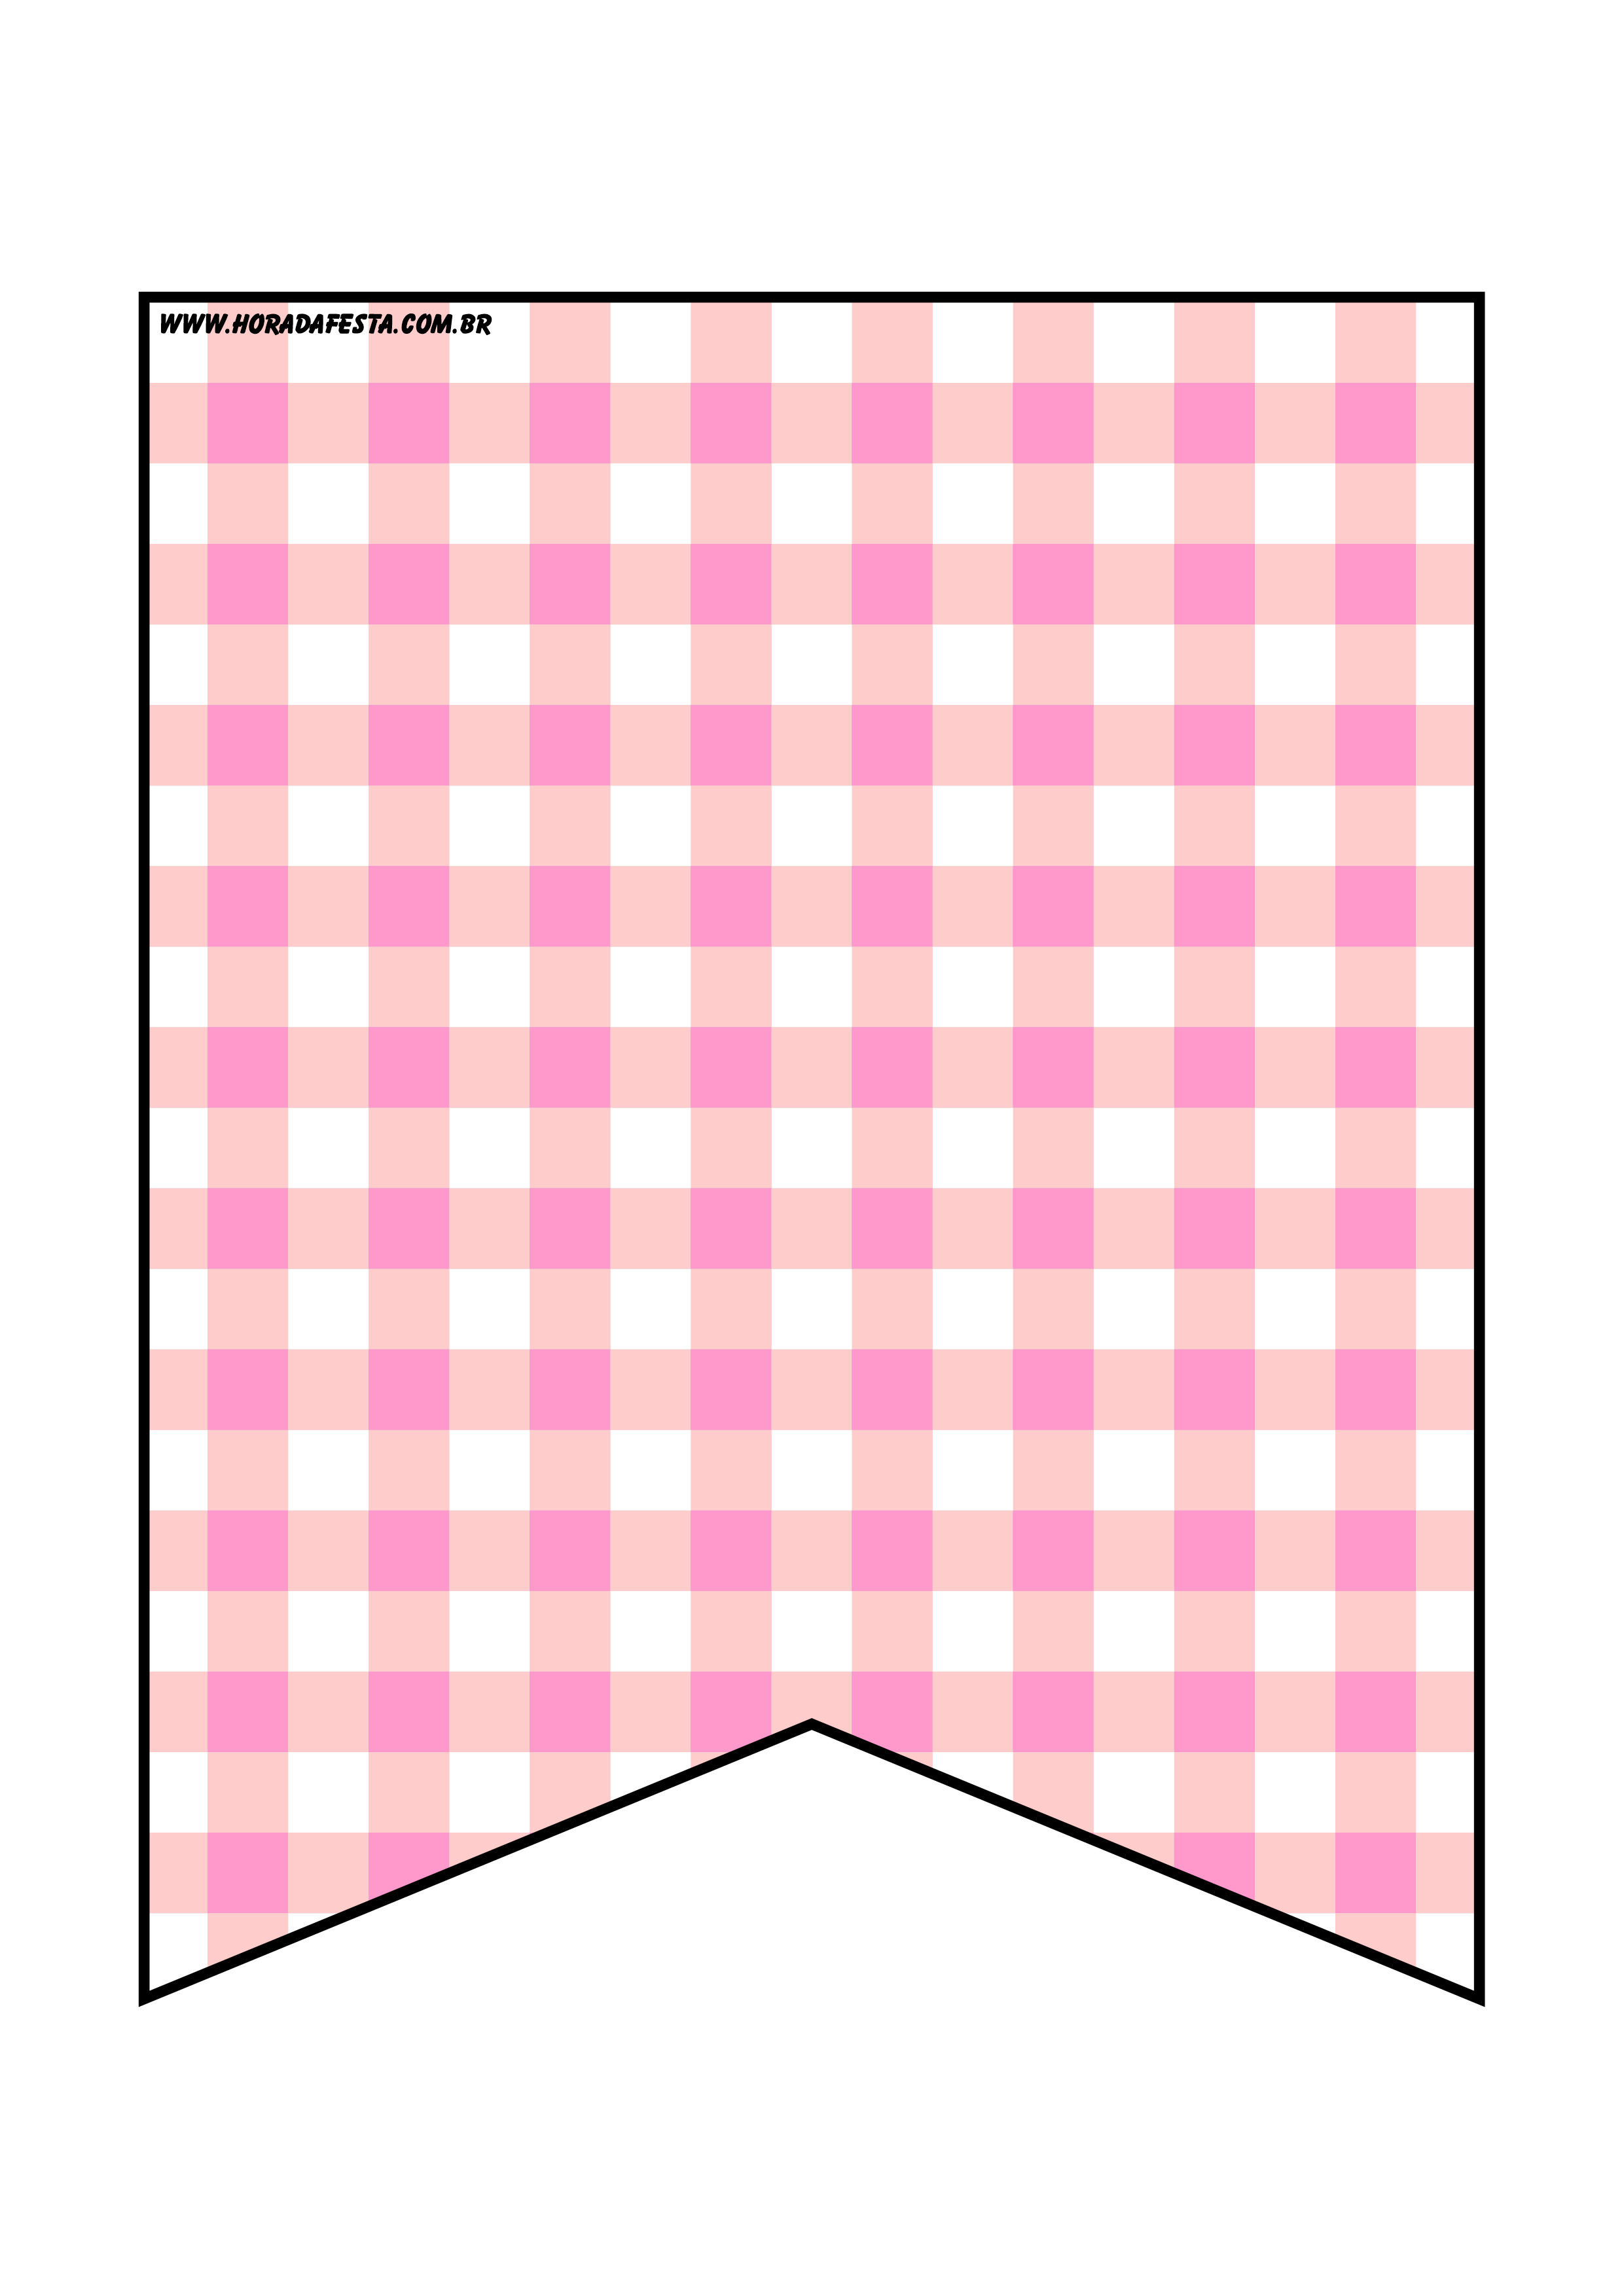 Bandeirinhas de São João xadrez rosa e branco decoração de festa junina artigos de papelaria png